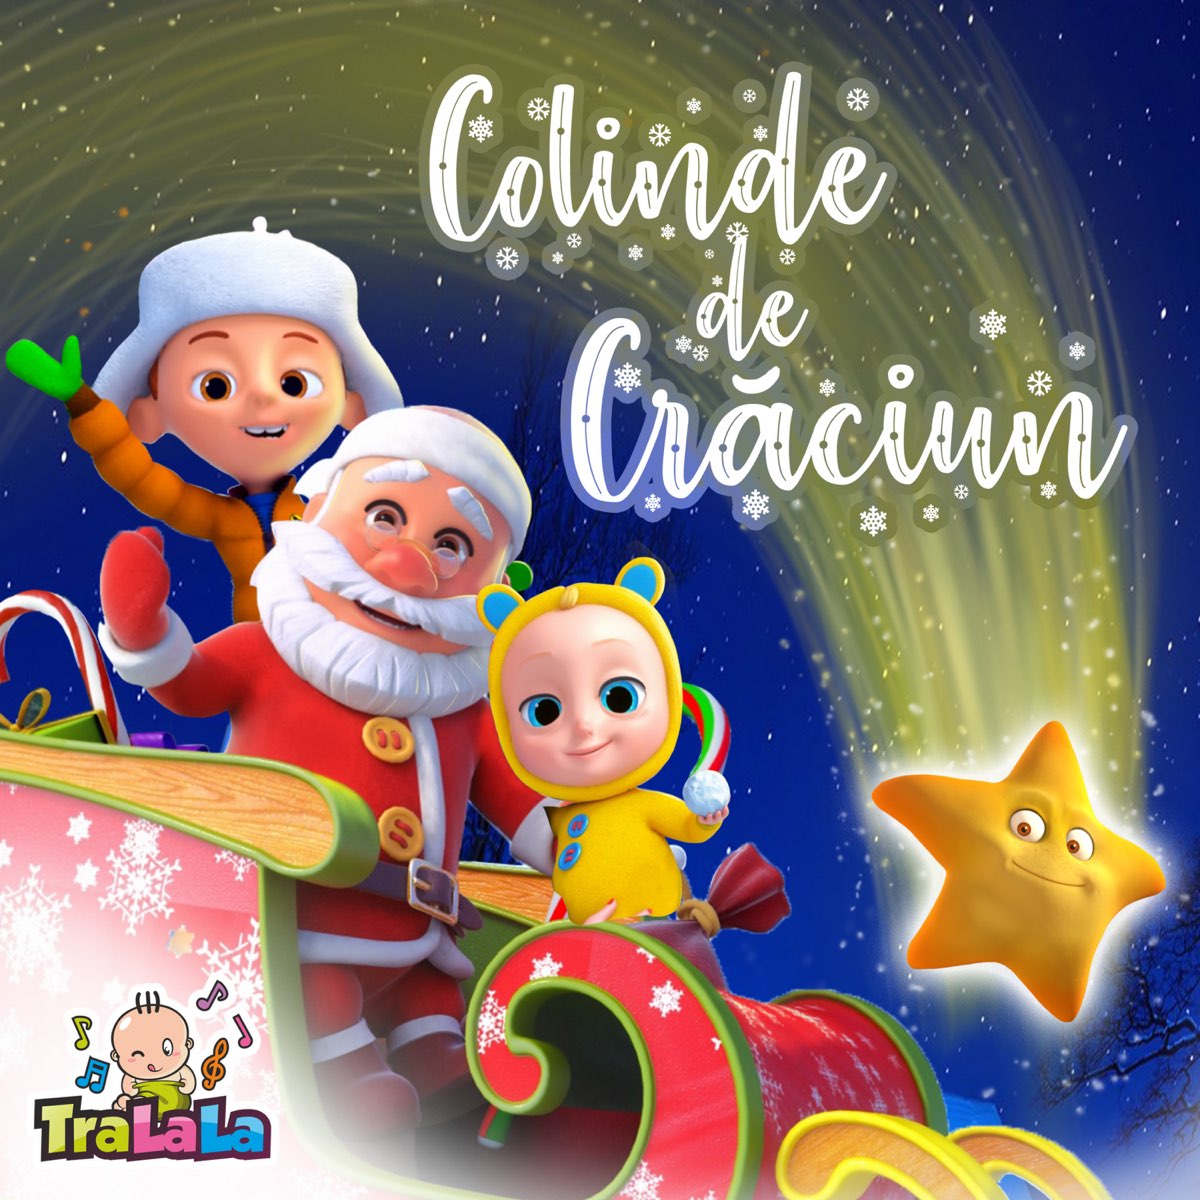 Colinde de Crăciun - Album by TraLaLa Cantece Pentru Copii - Apple Music